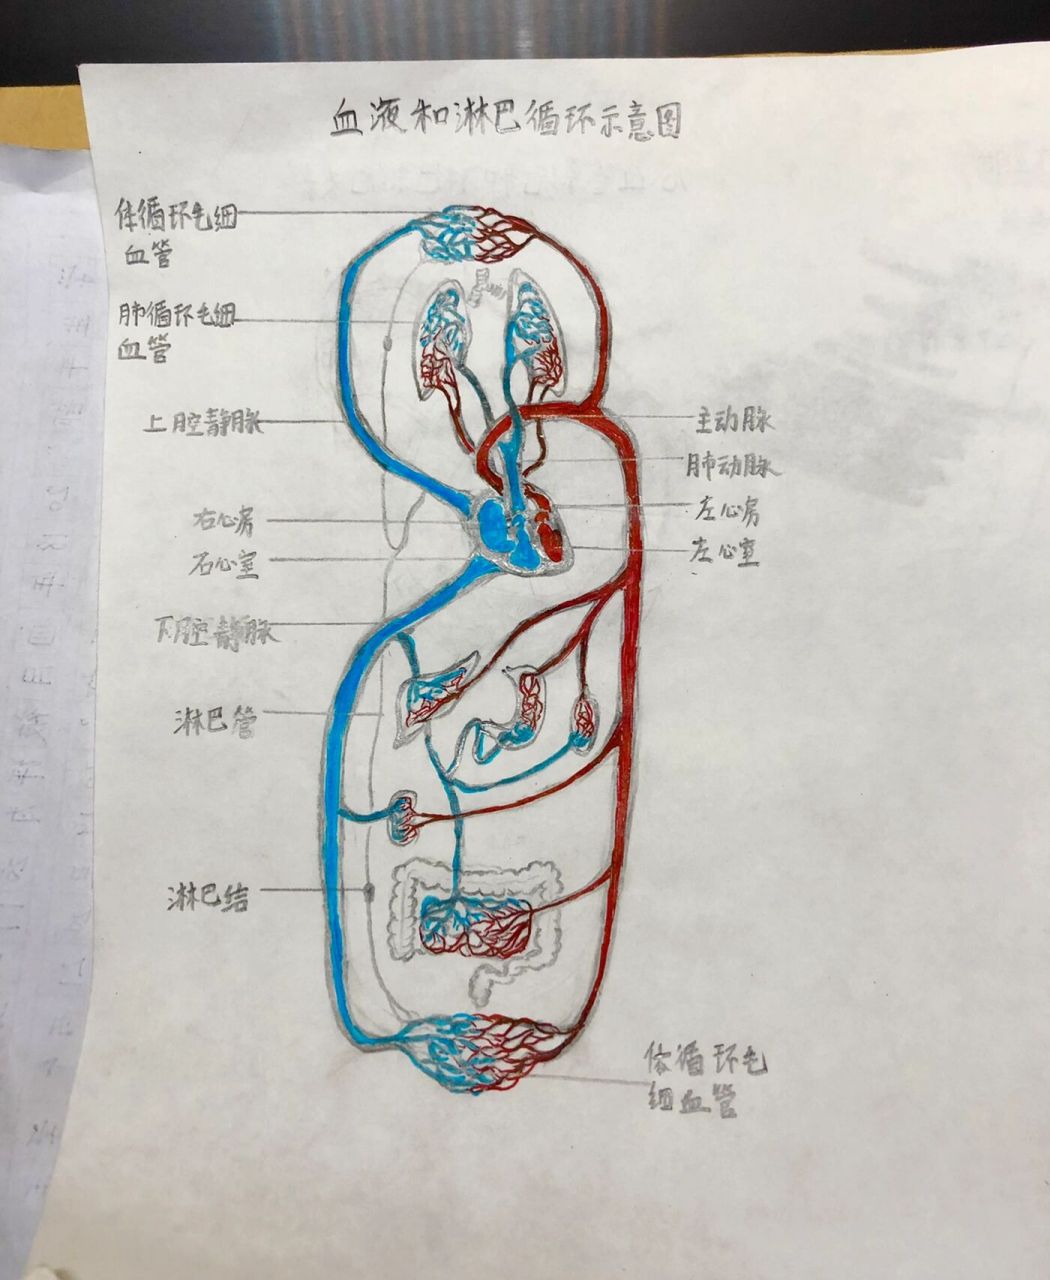 血液循环手绘图(示意) 医学生手绘!第一张彩图